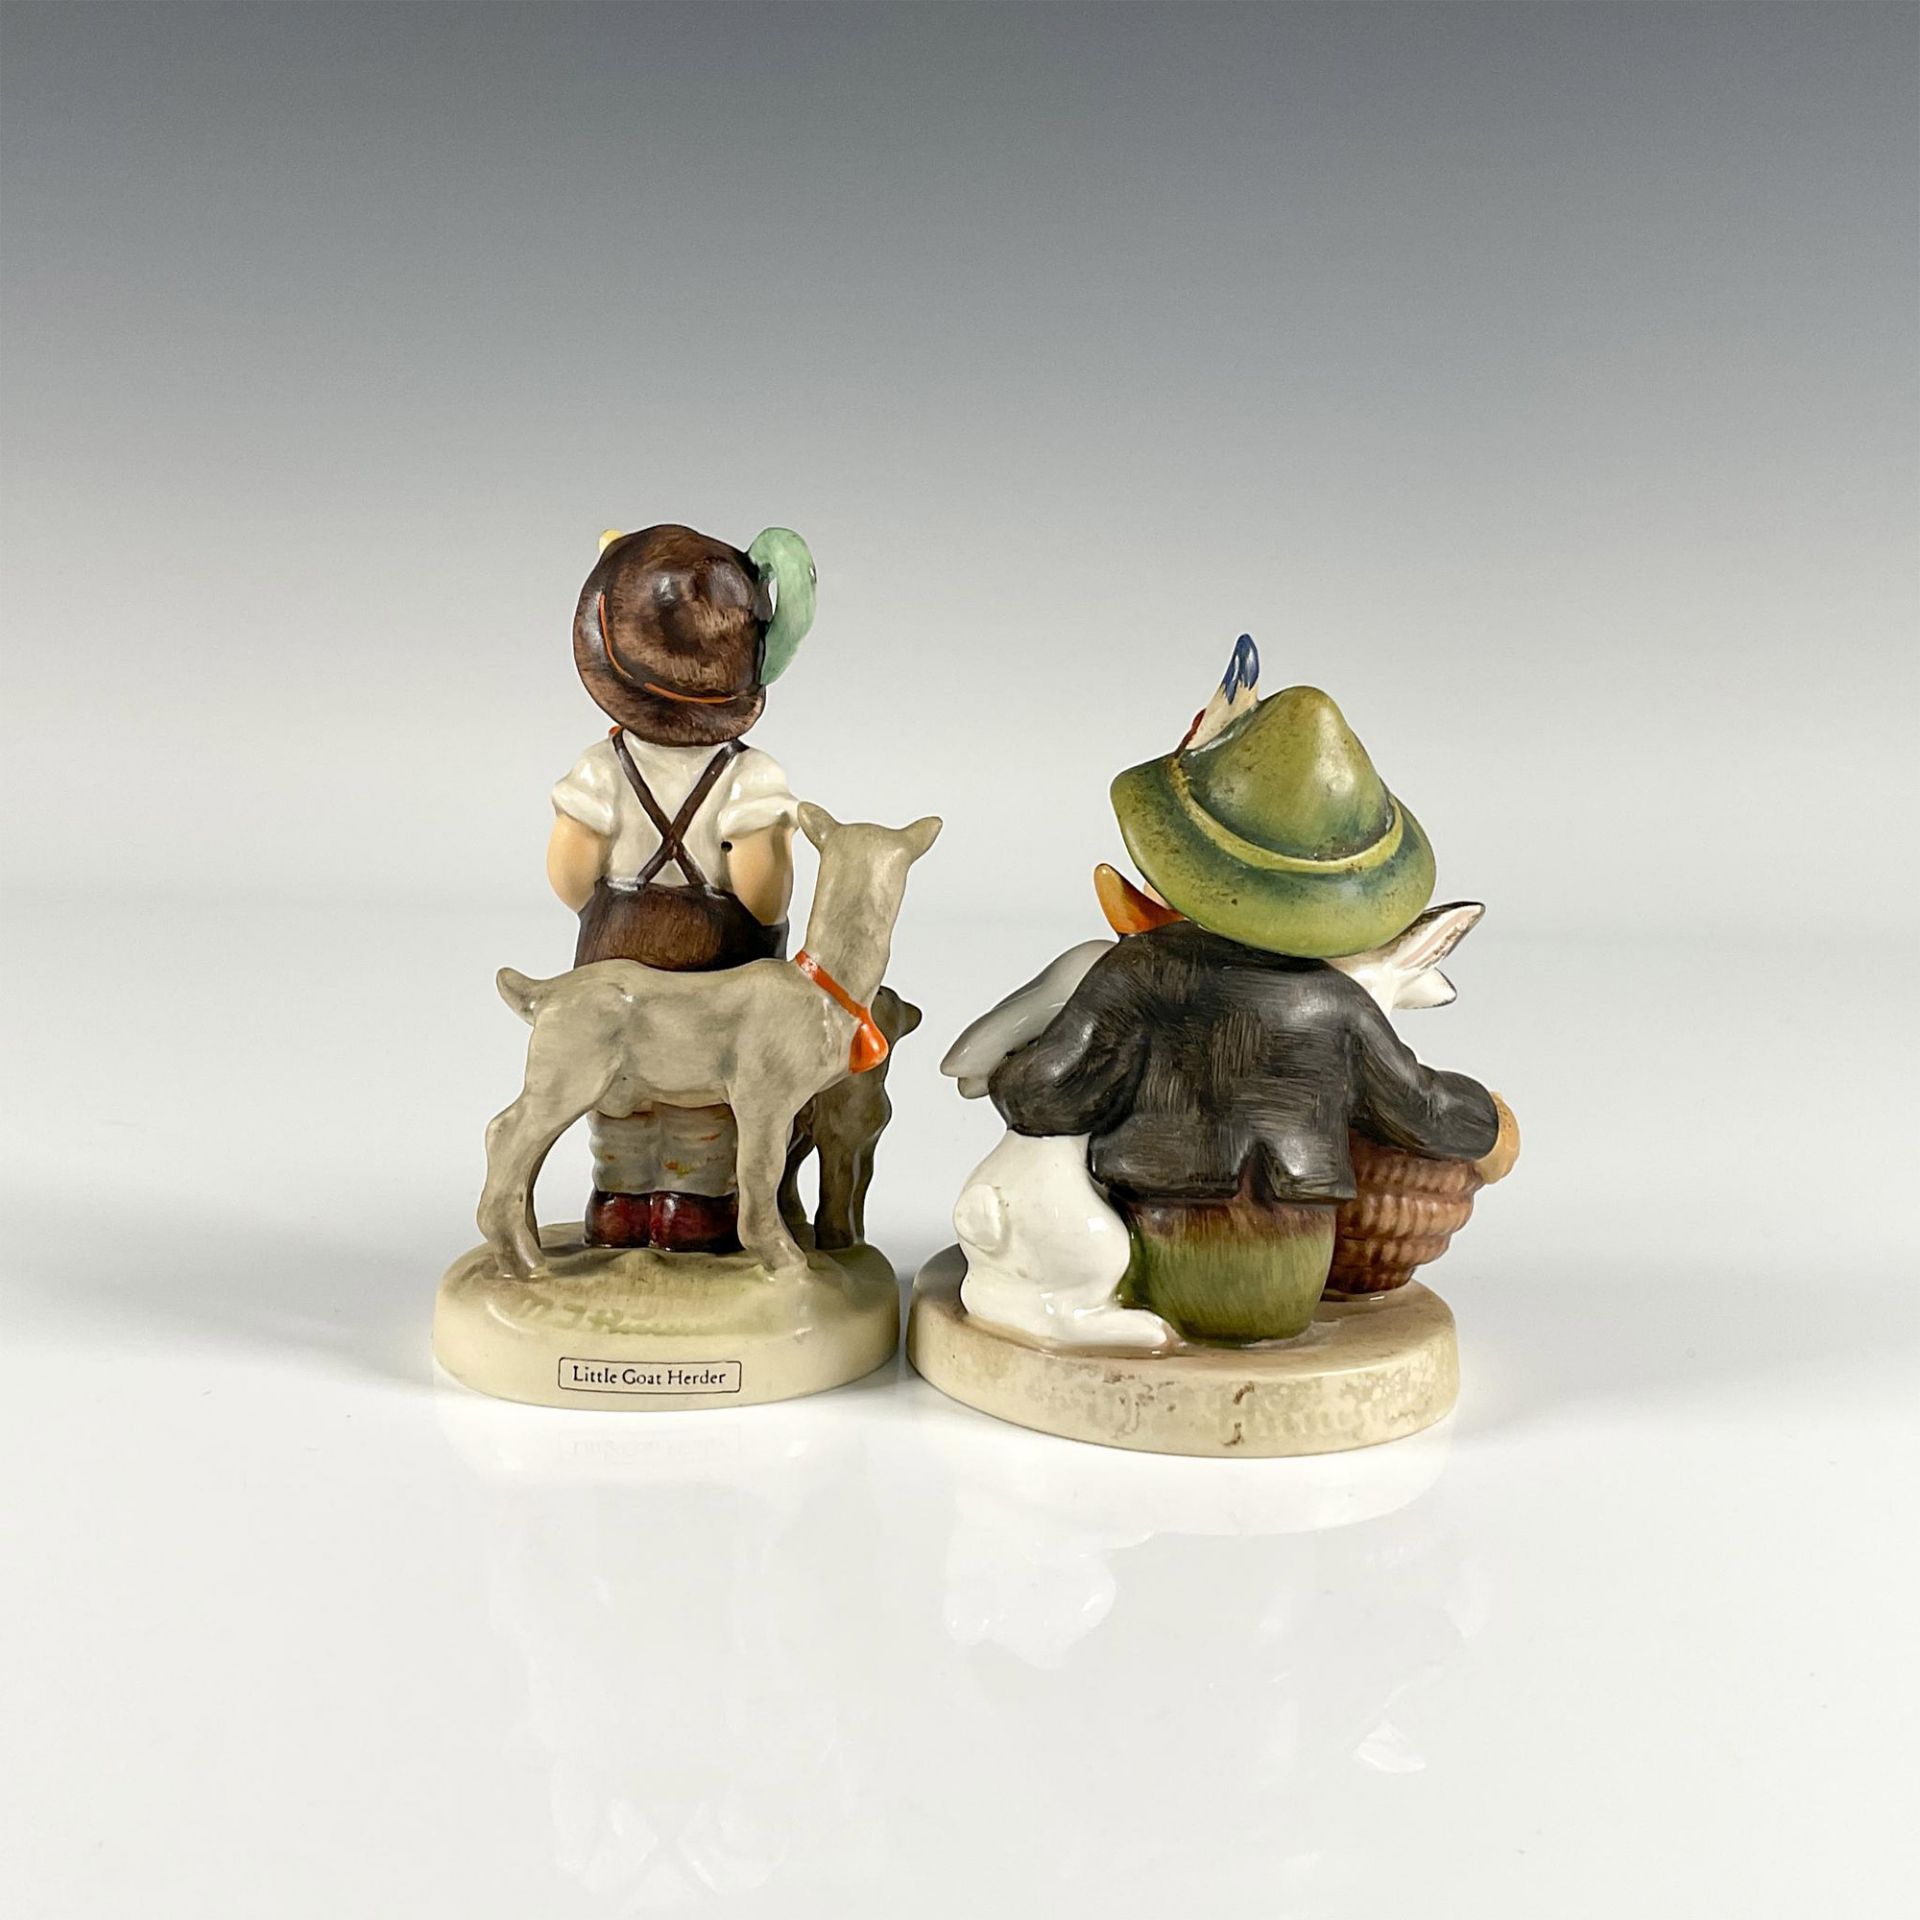 2pc Goebel Hummel Porcelain Figurines - Image 2 of 3